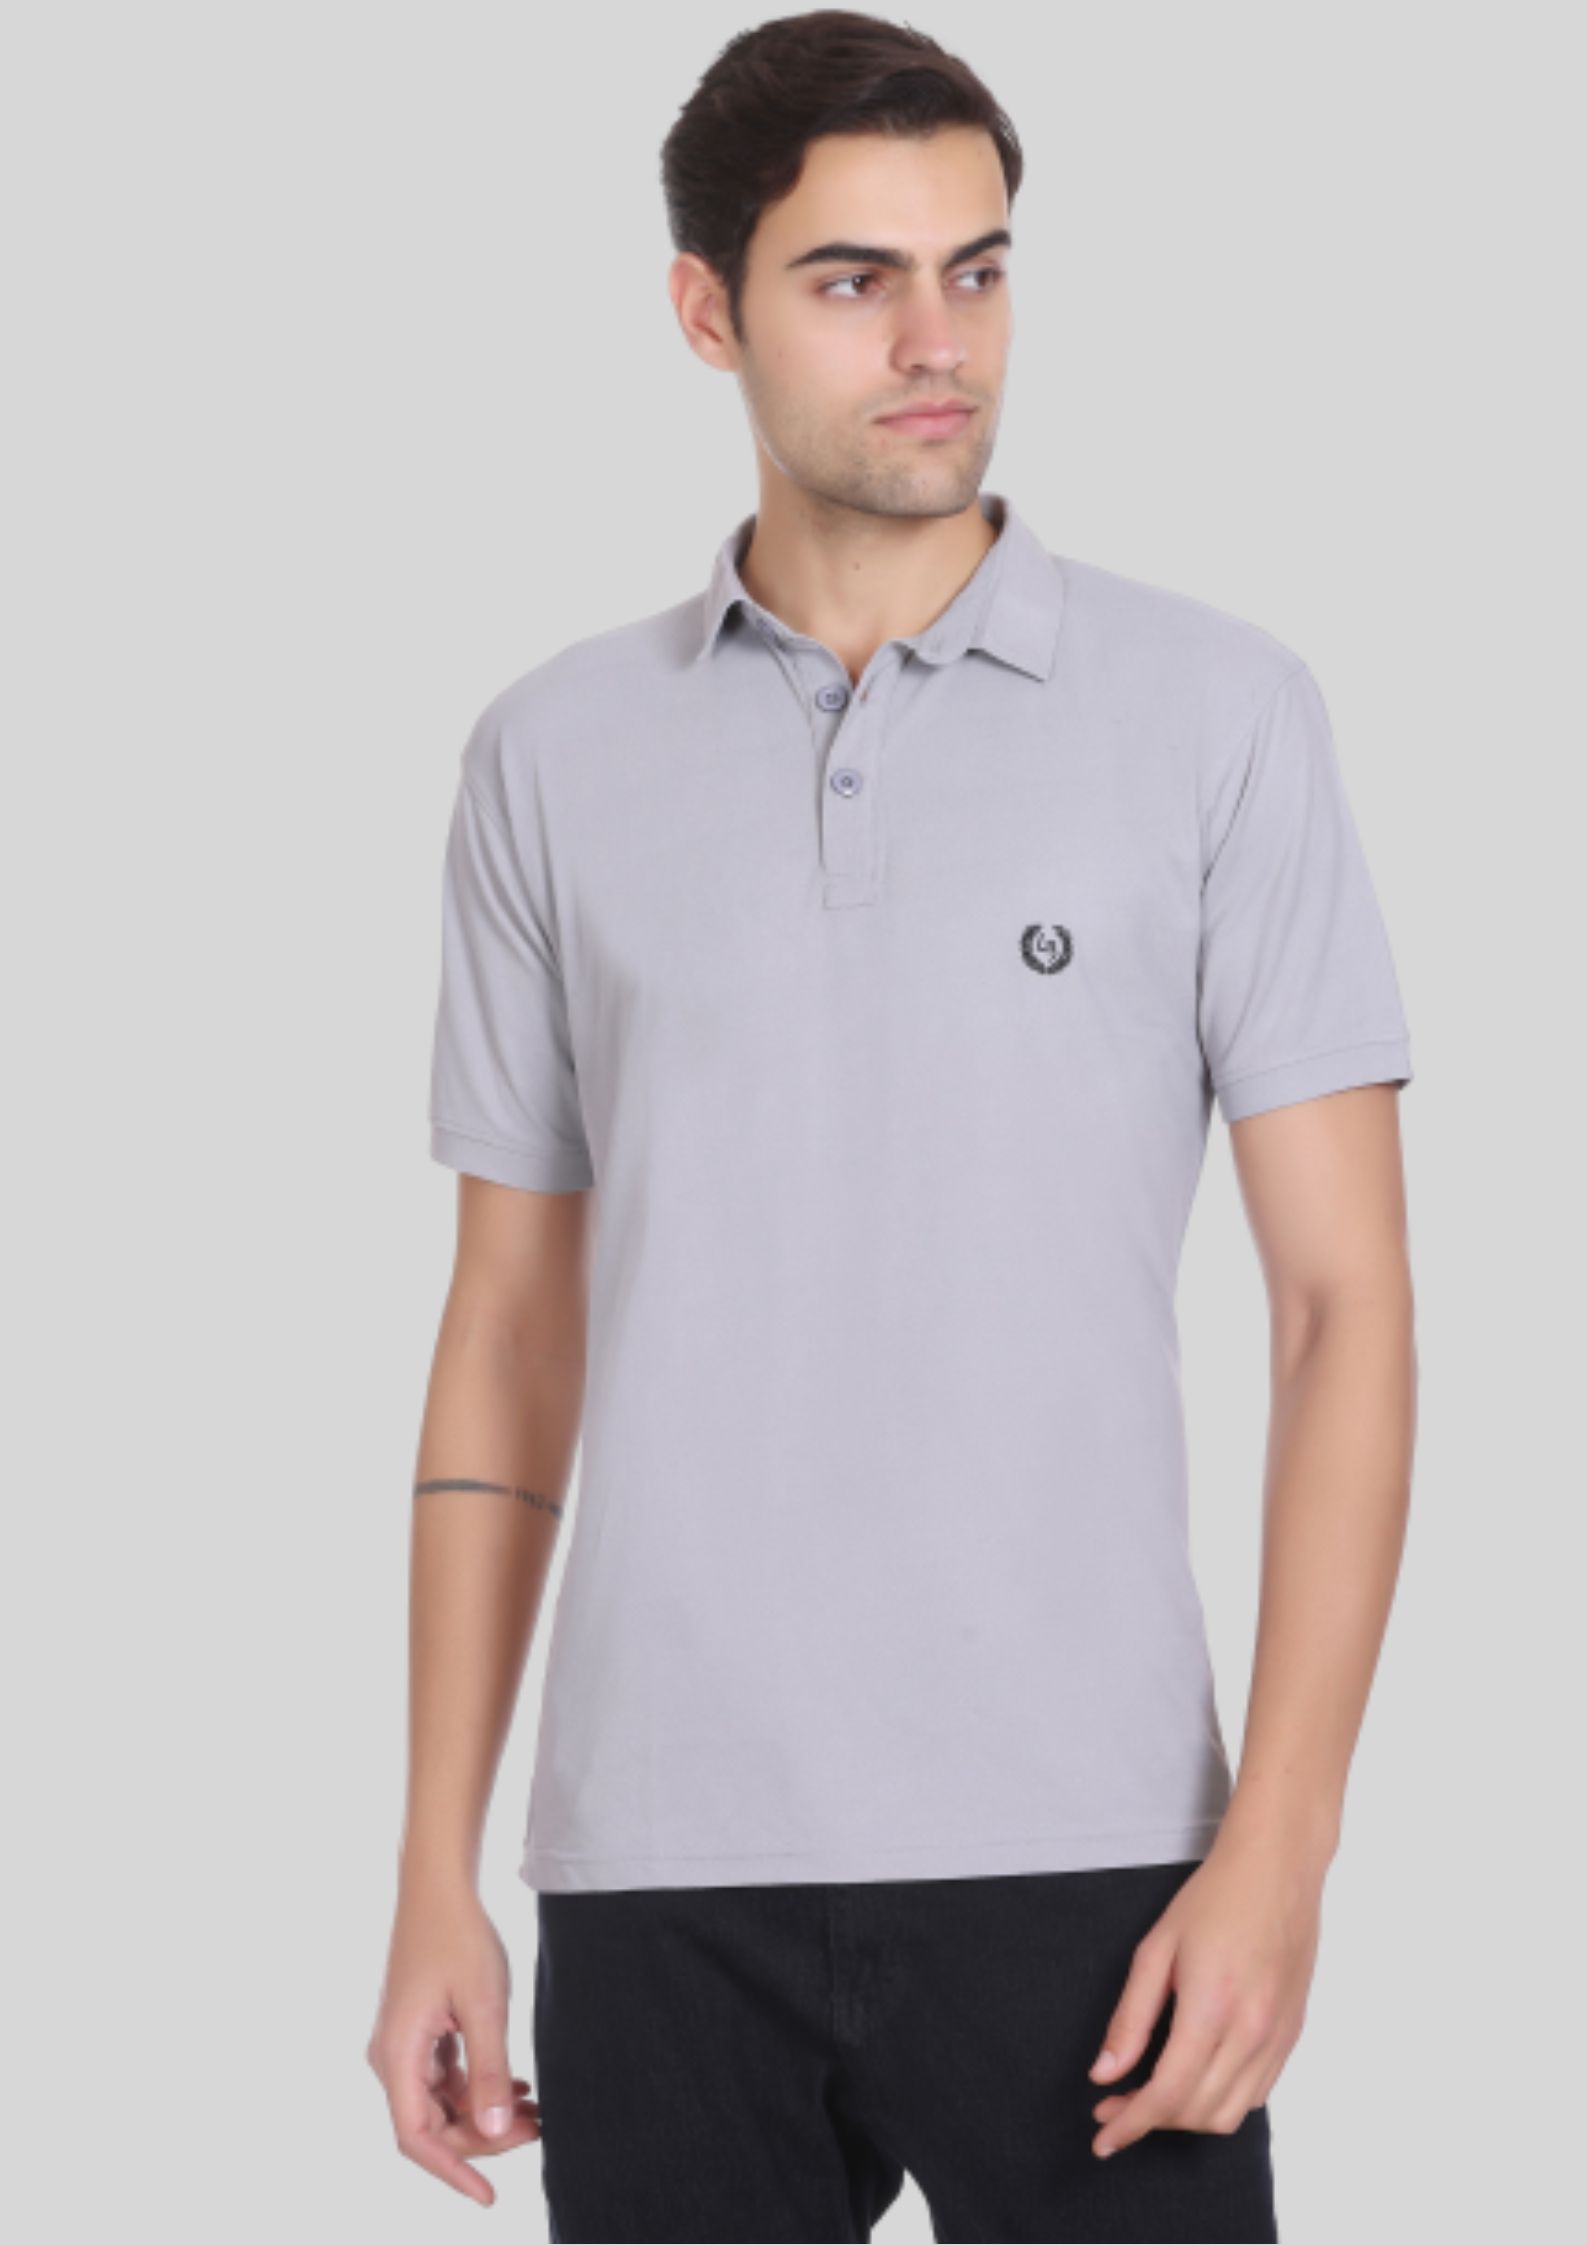     			LEEBONEE - Light Grey Cotton Blend Regular Fit Men's Polo T Shirt ( Pack of 1 )